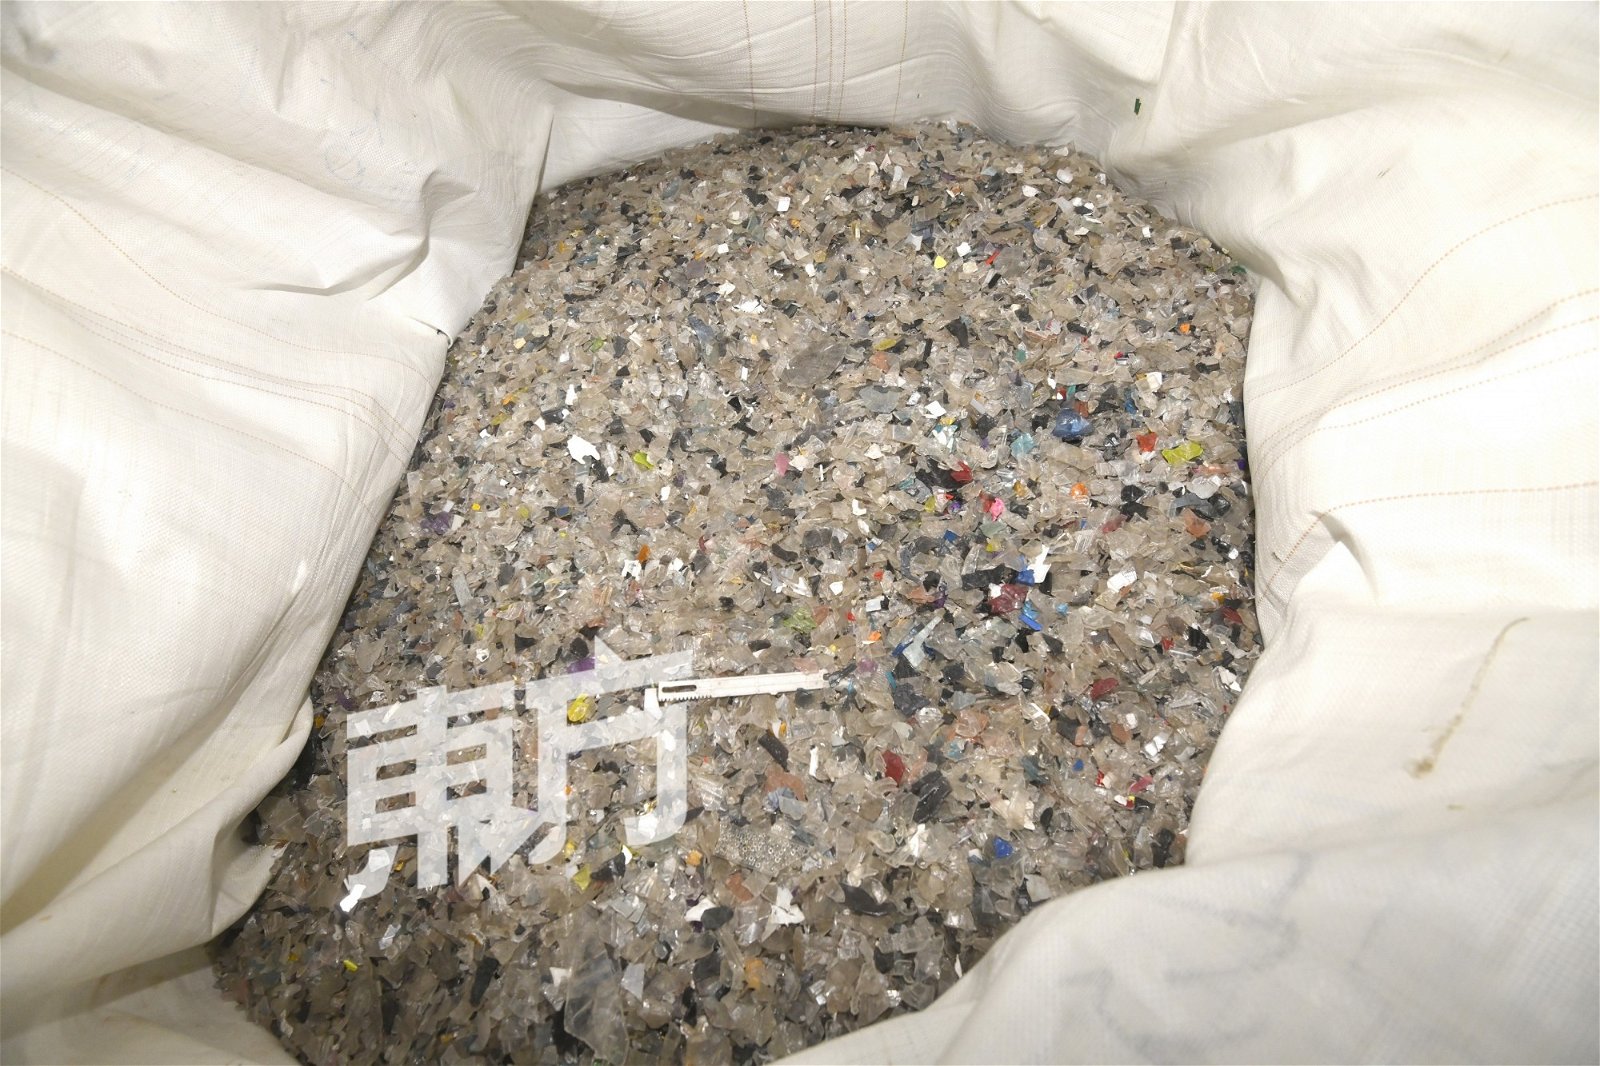 麻包袋皆装满塑料颗粒，环境局官员表示这些颗粒会造成严重的海洋污染。（摄影： 伍信隆）